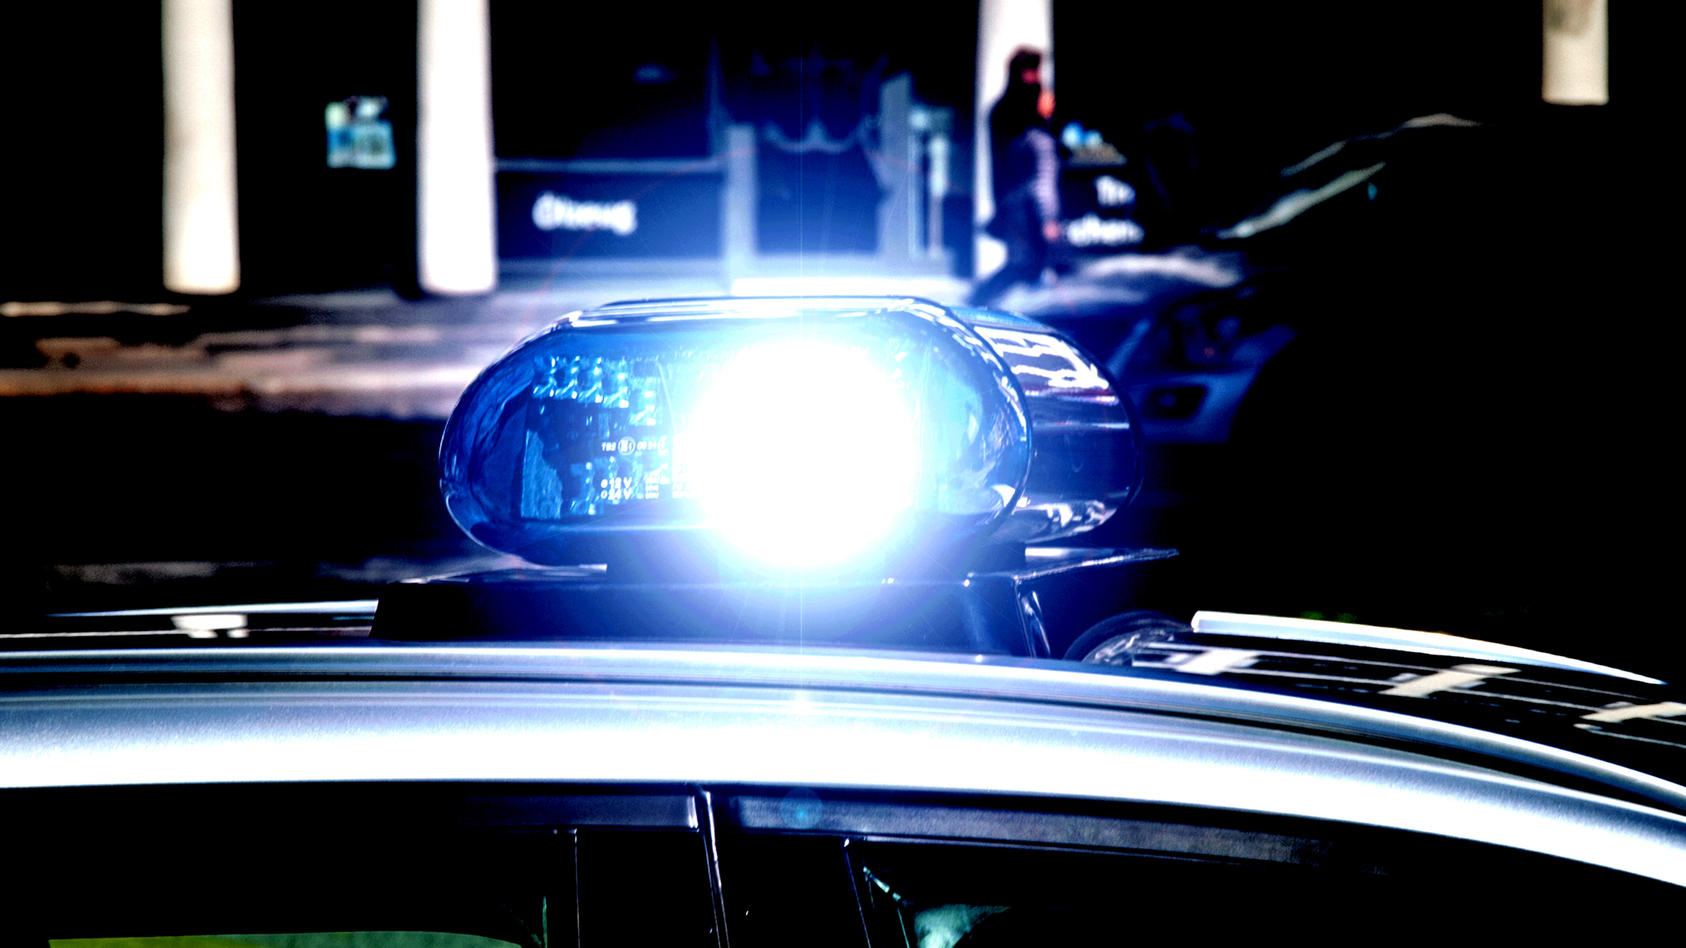 Ein Einsatzfahrzeug der Polizei mit Blaulicht